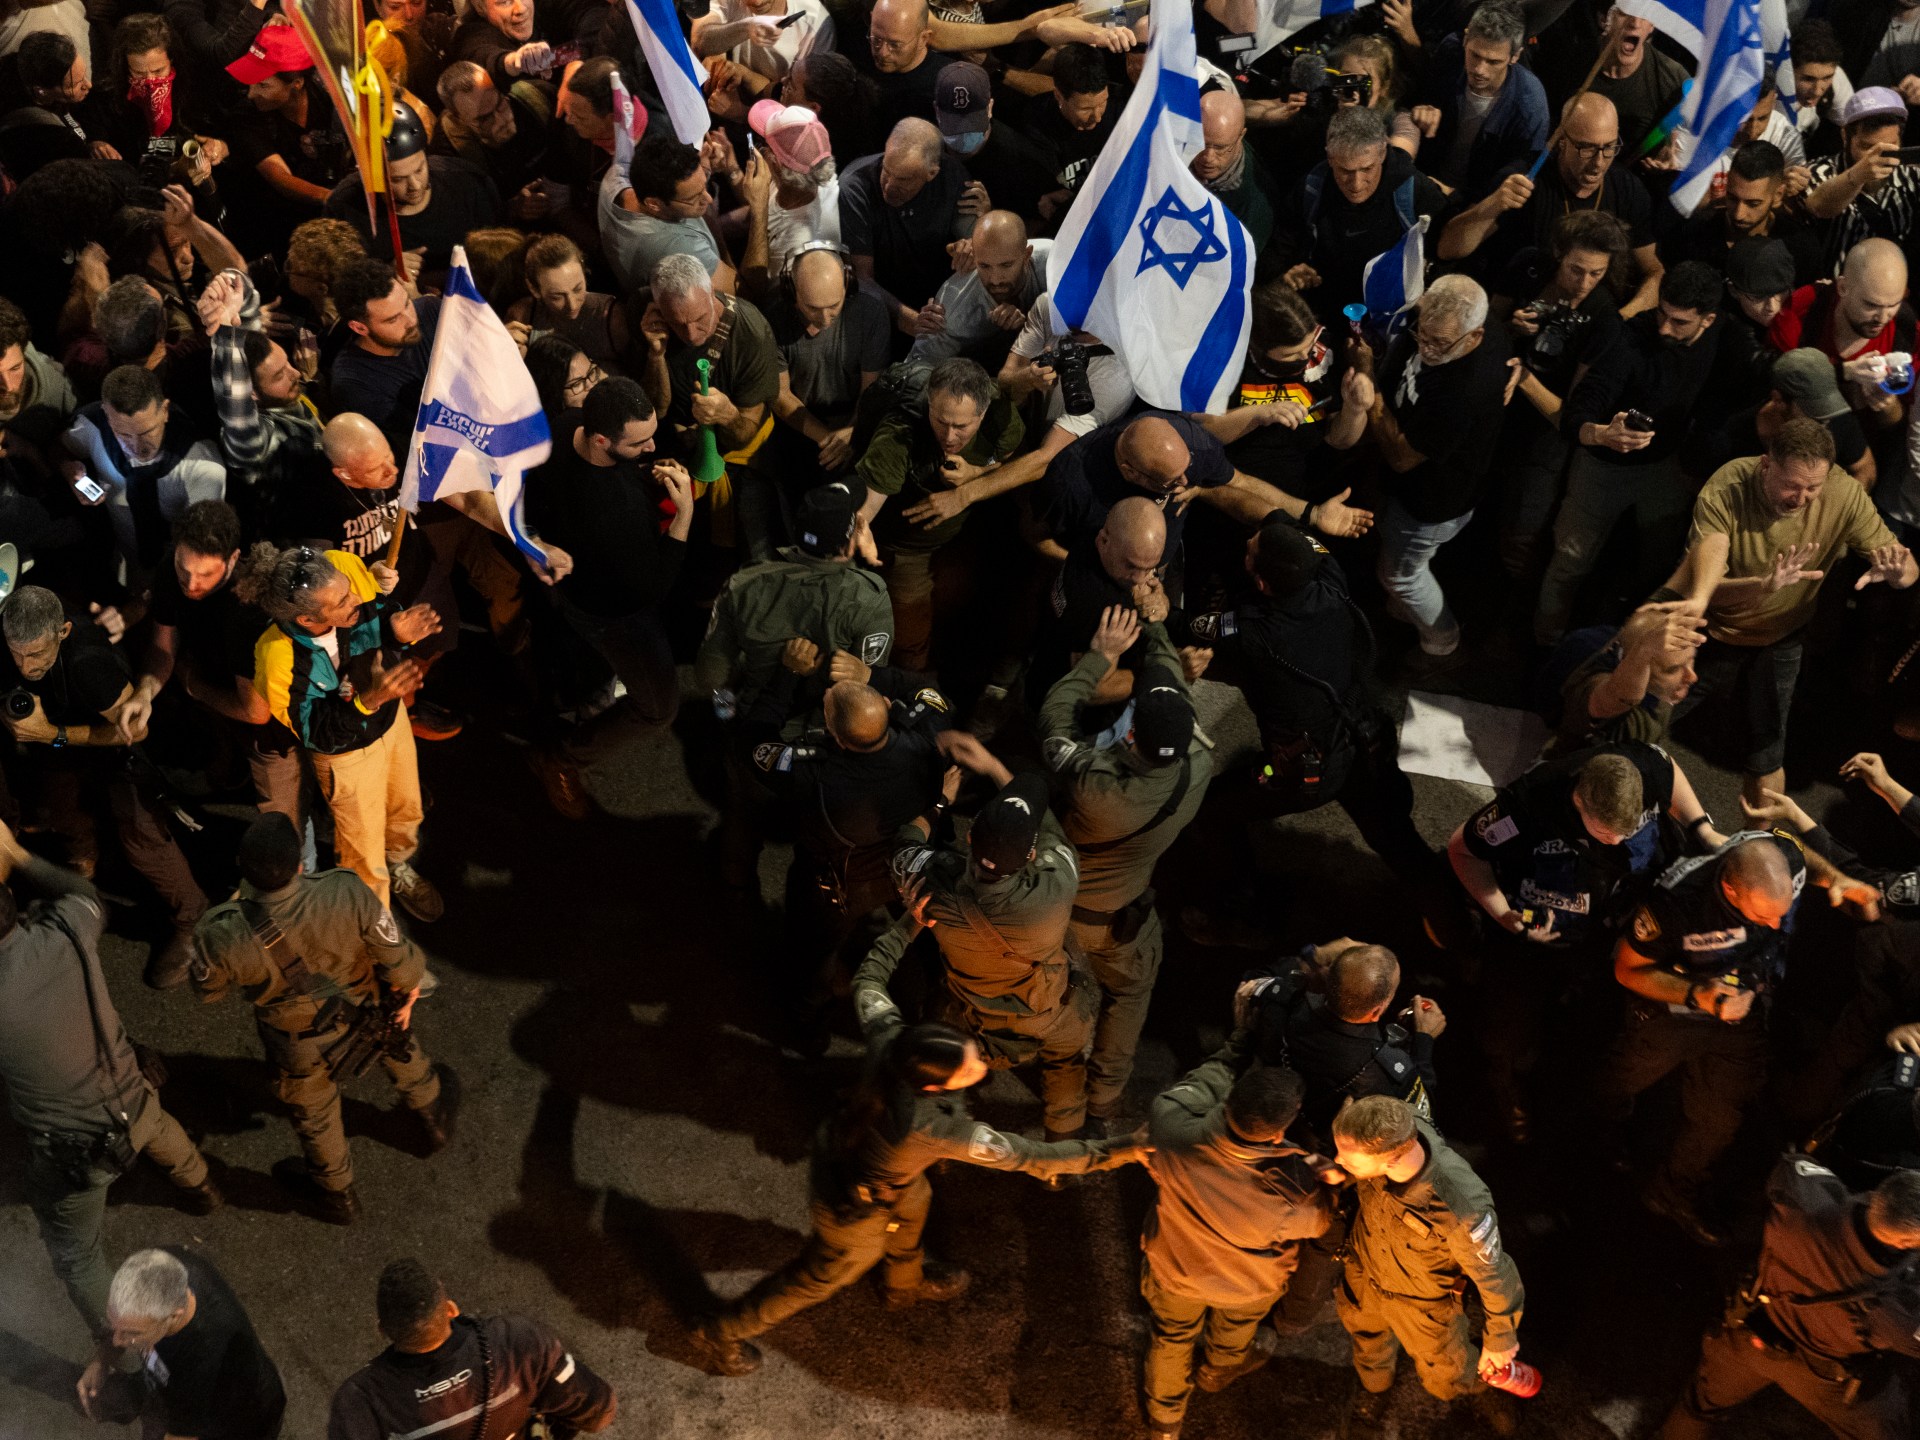 آلاف الإسرائيليين يتظاهرون للمطالبة بصفقة تبادل وإسقاط الحكومة | أخبار – البوكس نيوز